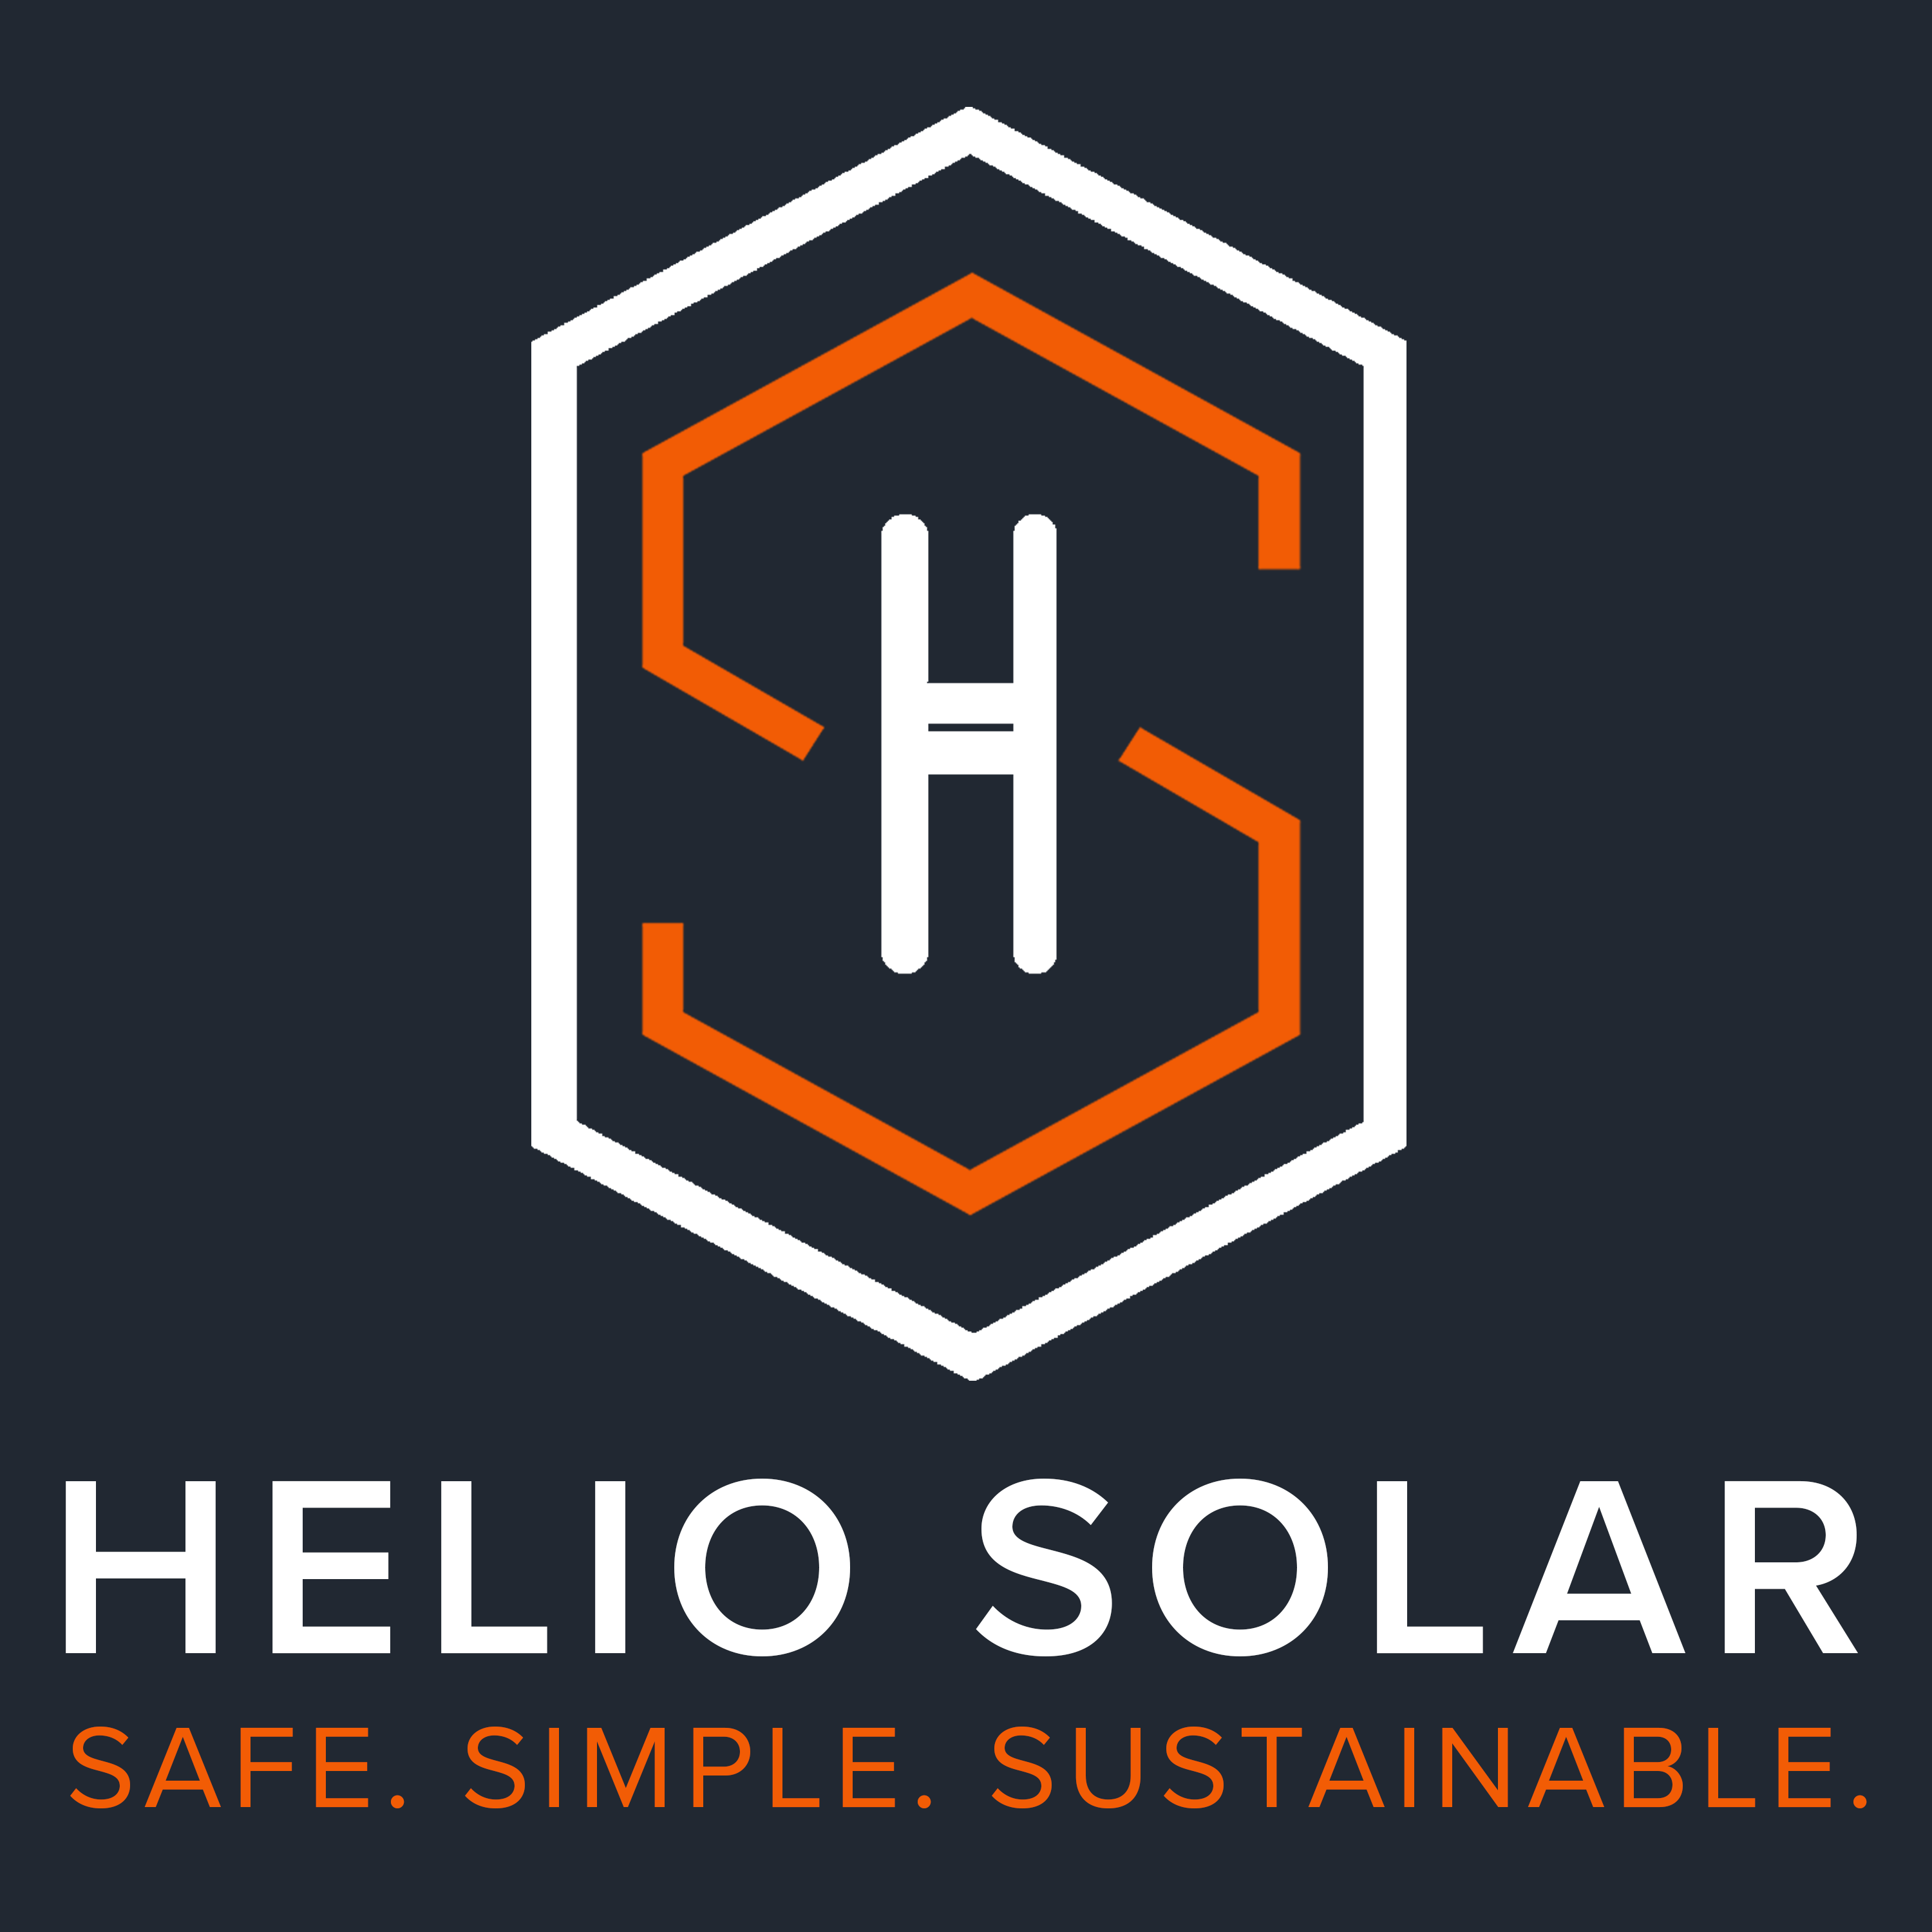 Helio Solar